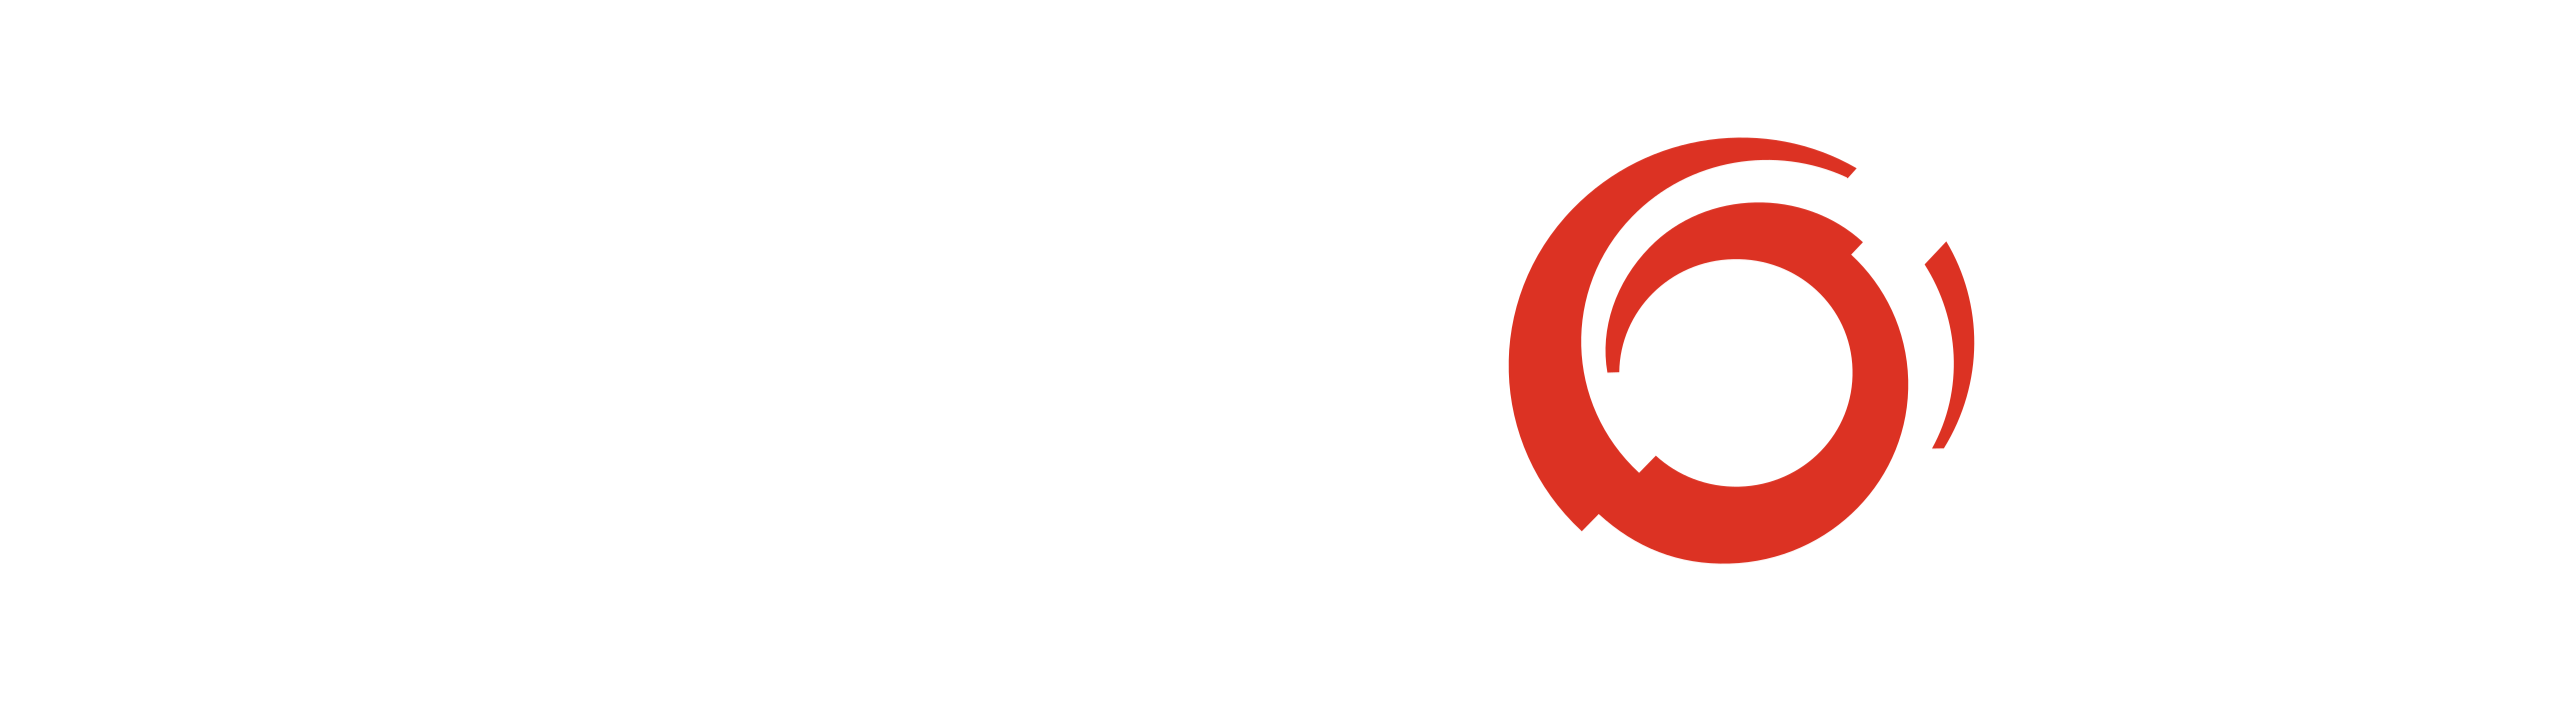 Alstom SA logo